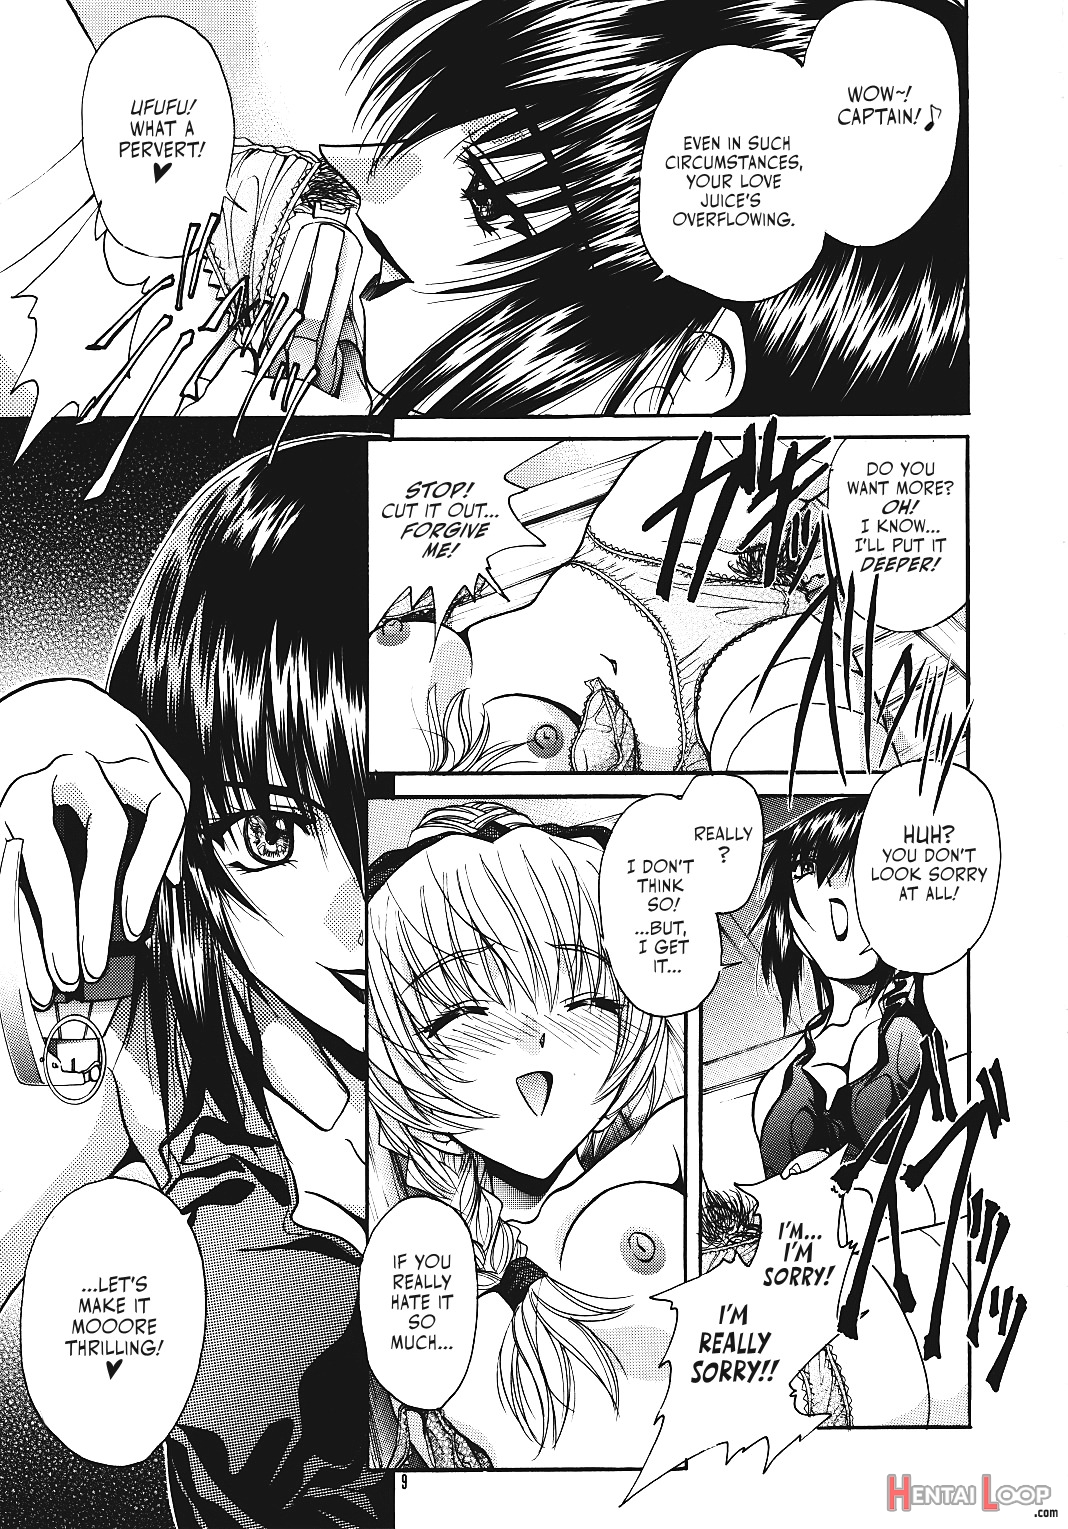 Sasayaki page 8